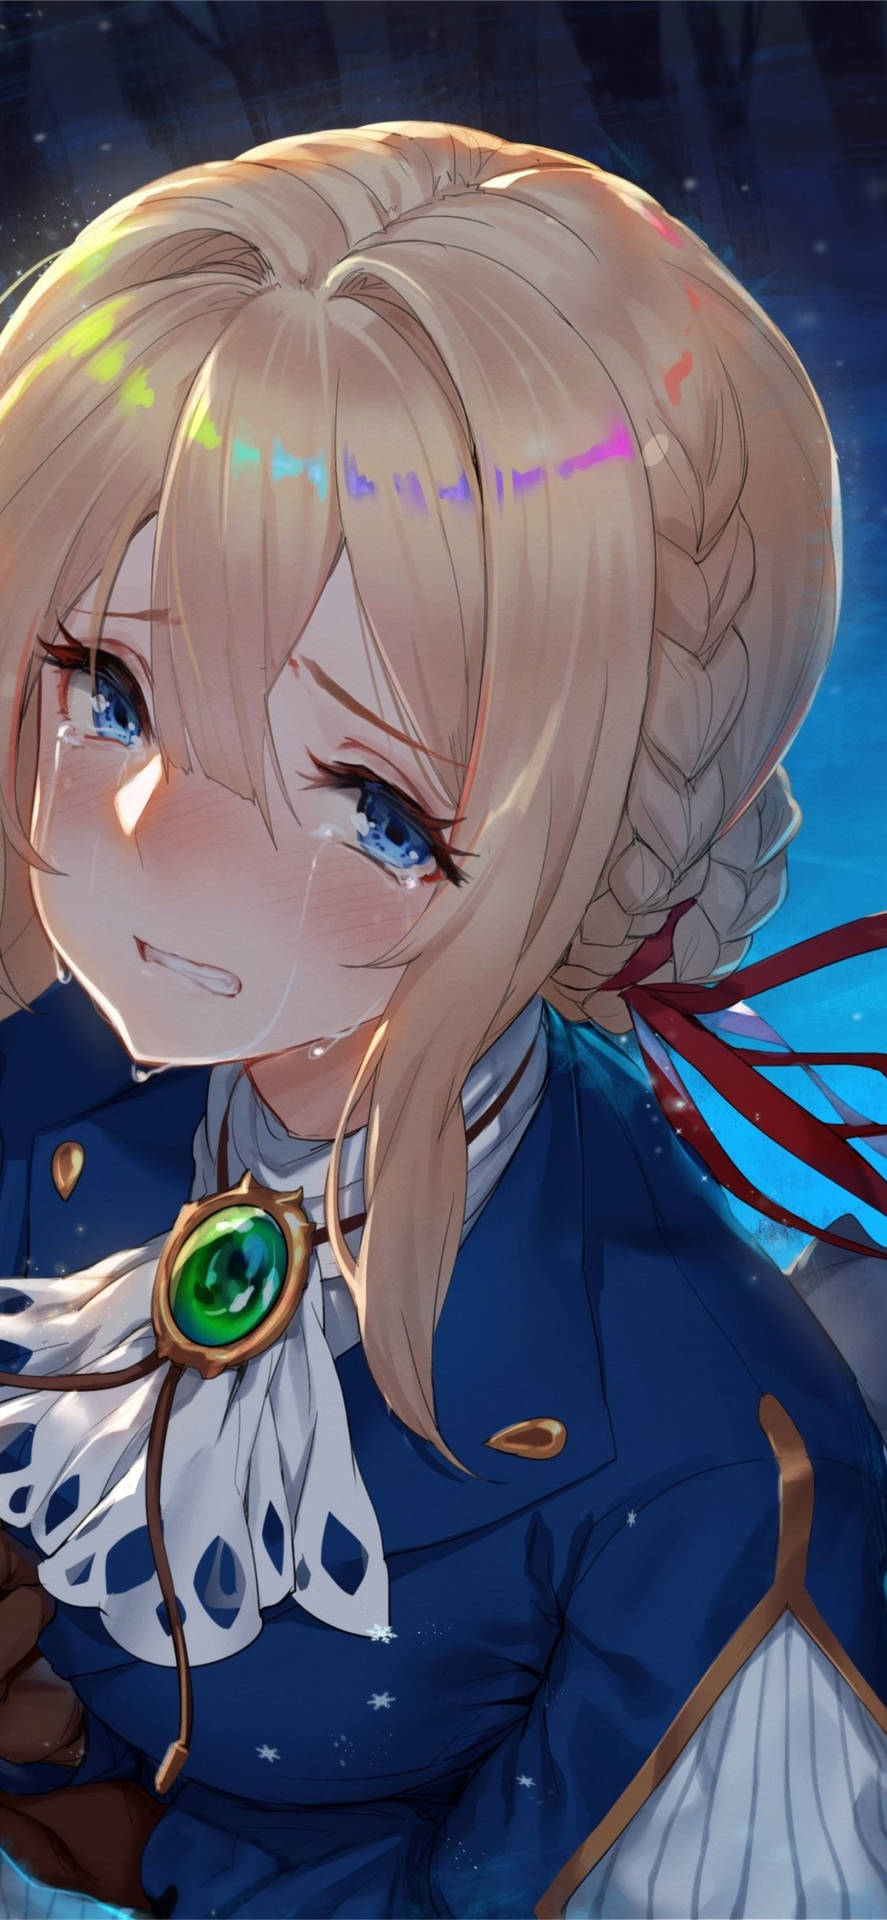 Sad Crying Anime Girl Iphone Background